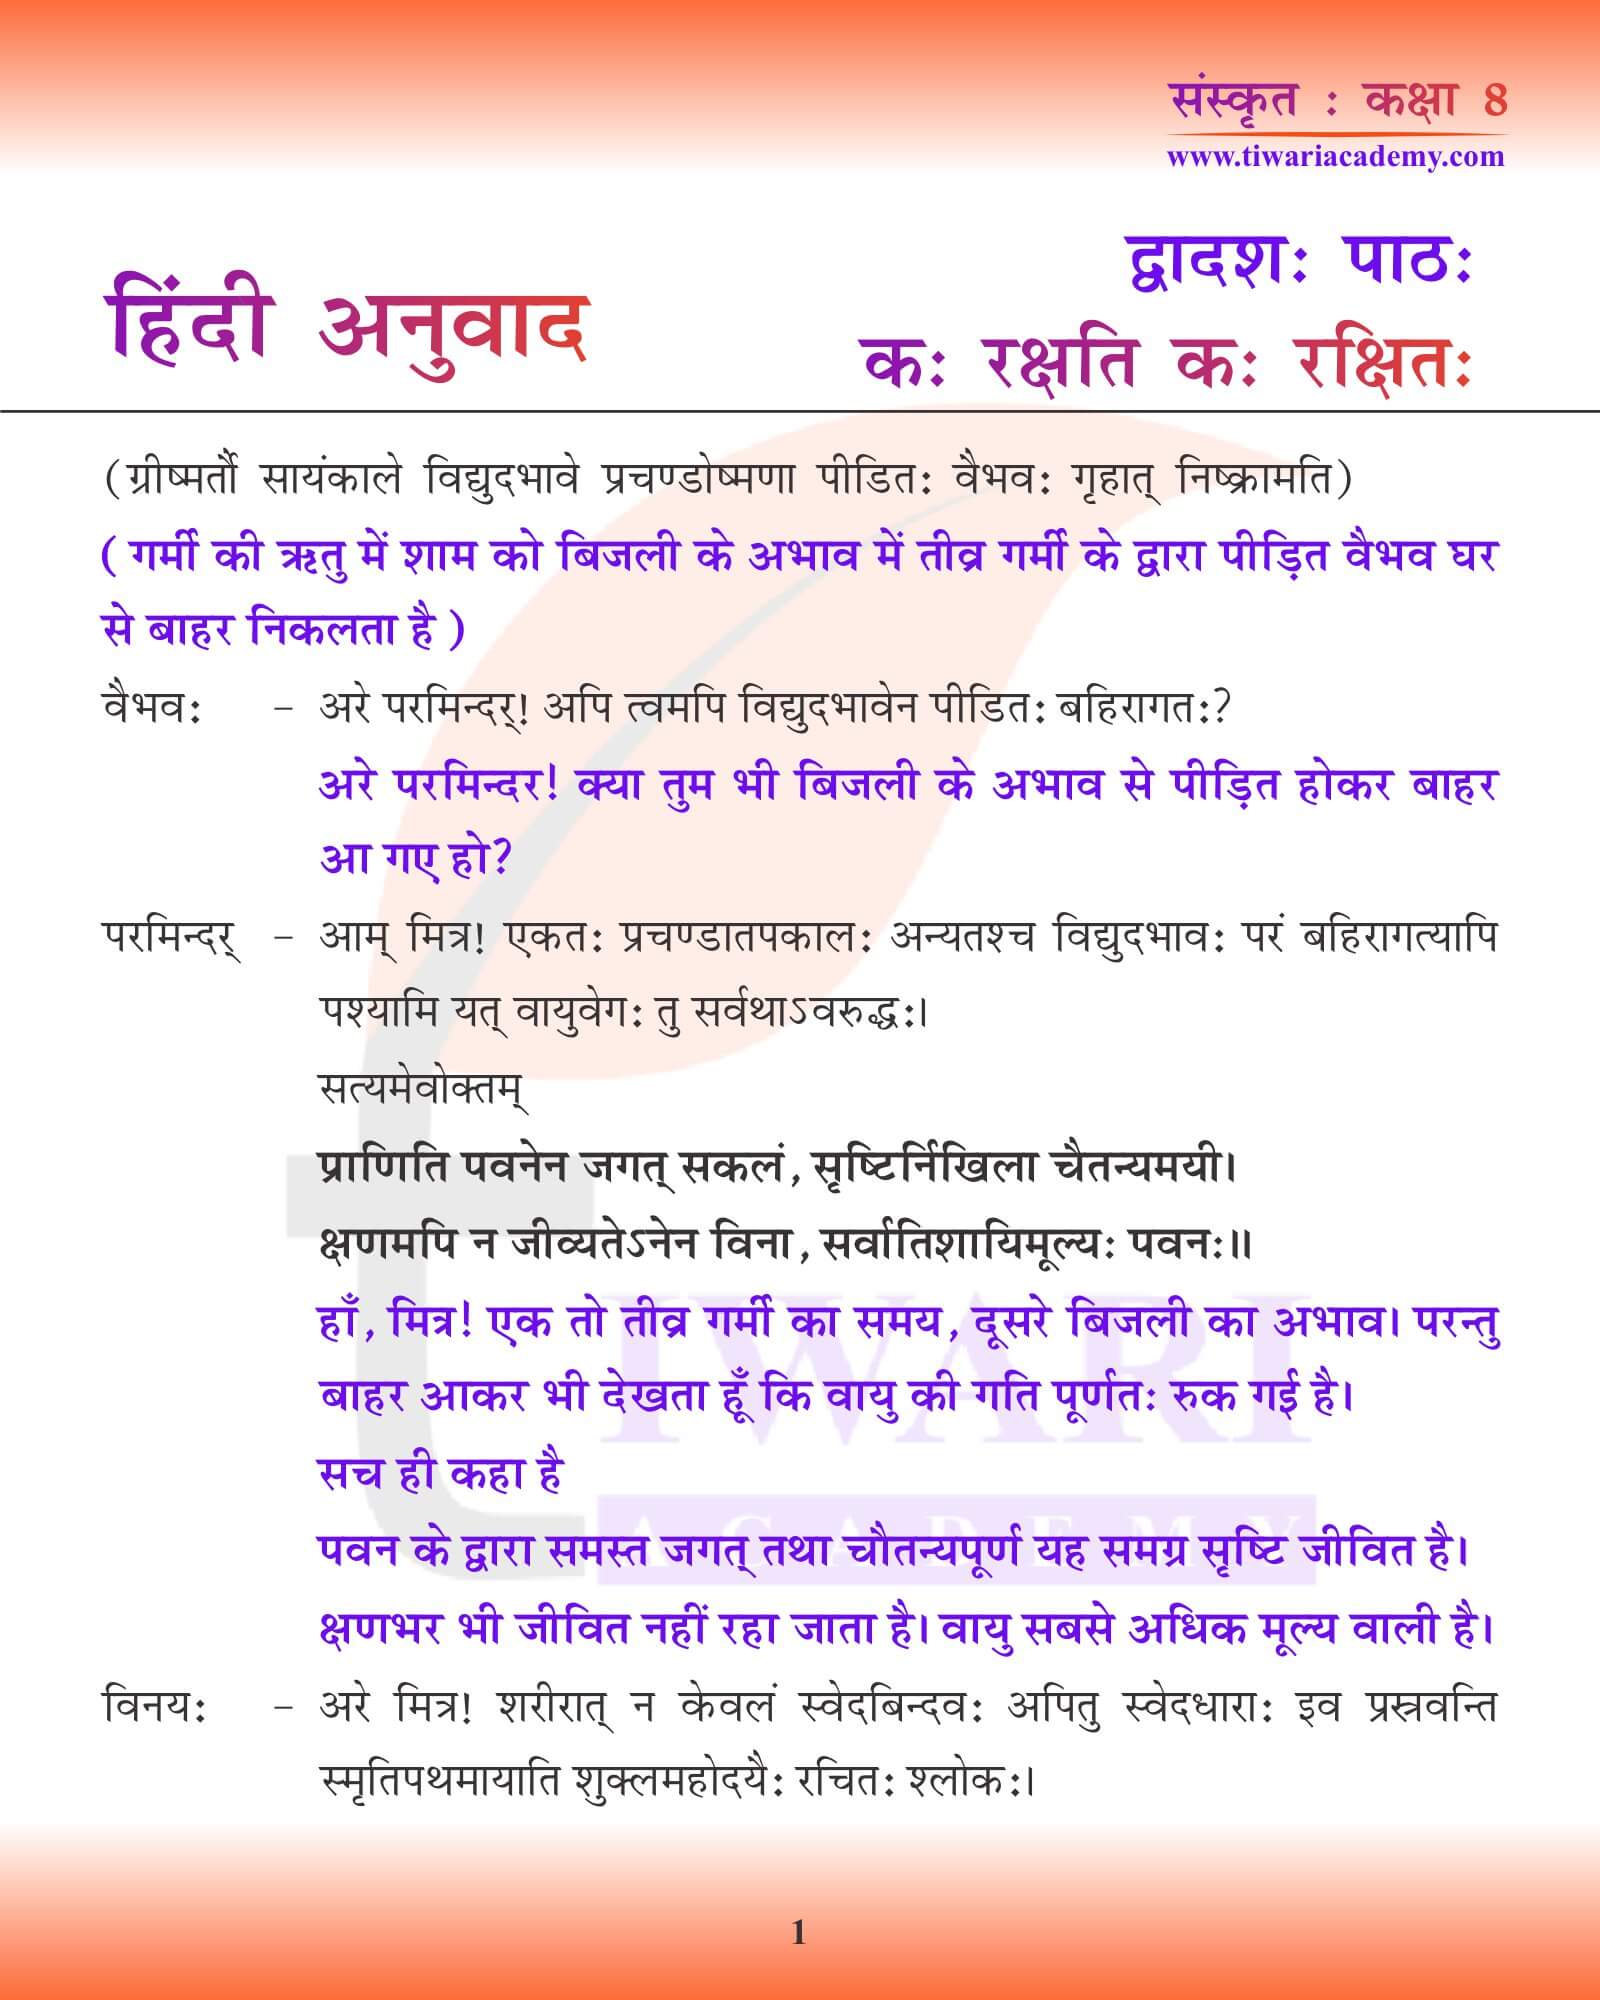 कक्षा 8 संस्कृत अध्याय 12 हिंदी में अनुवाद